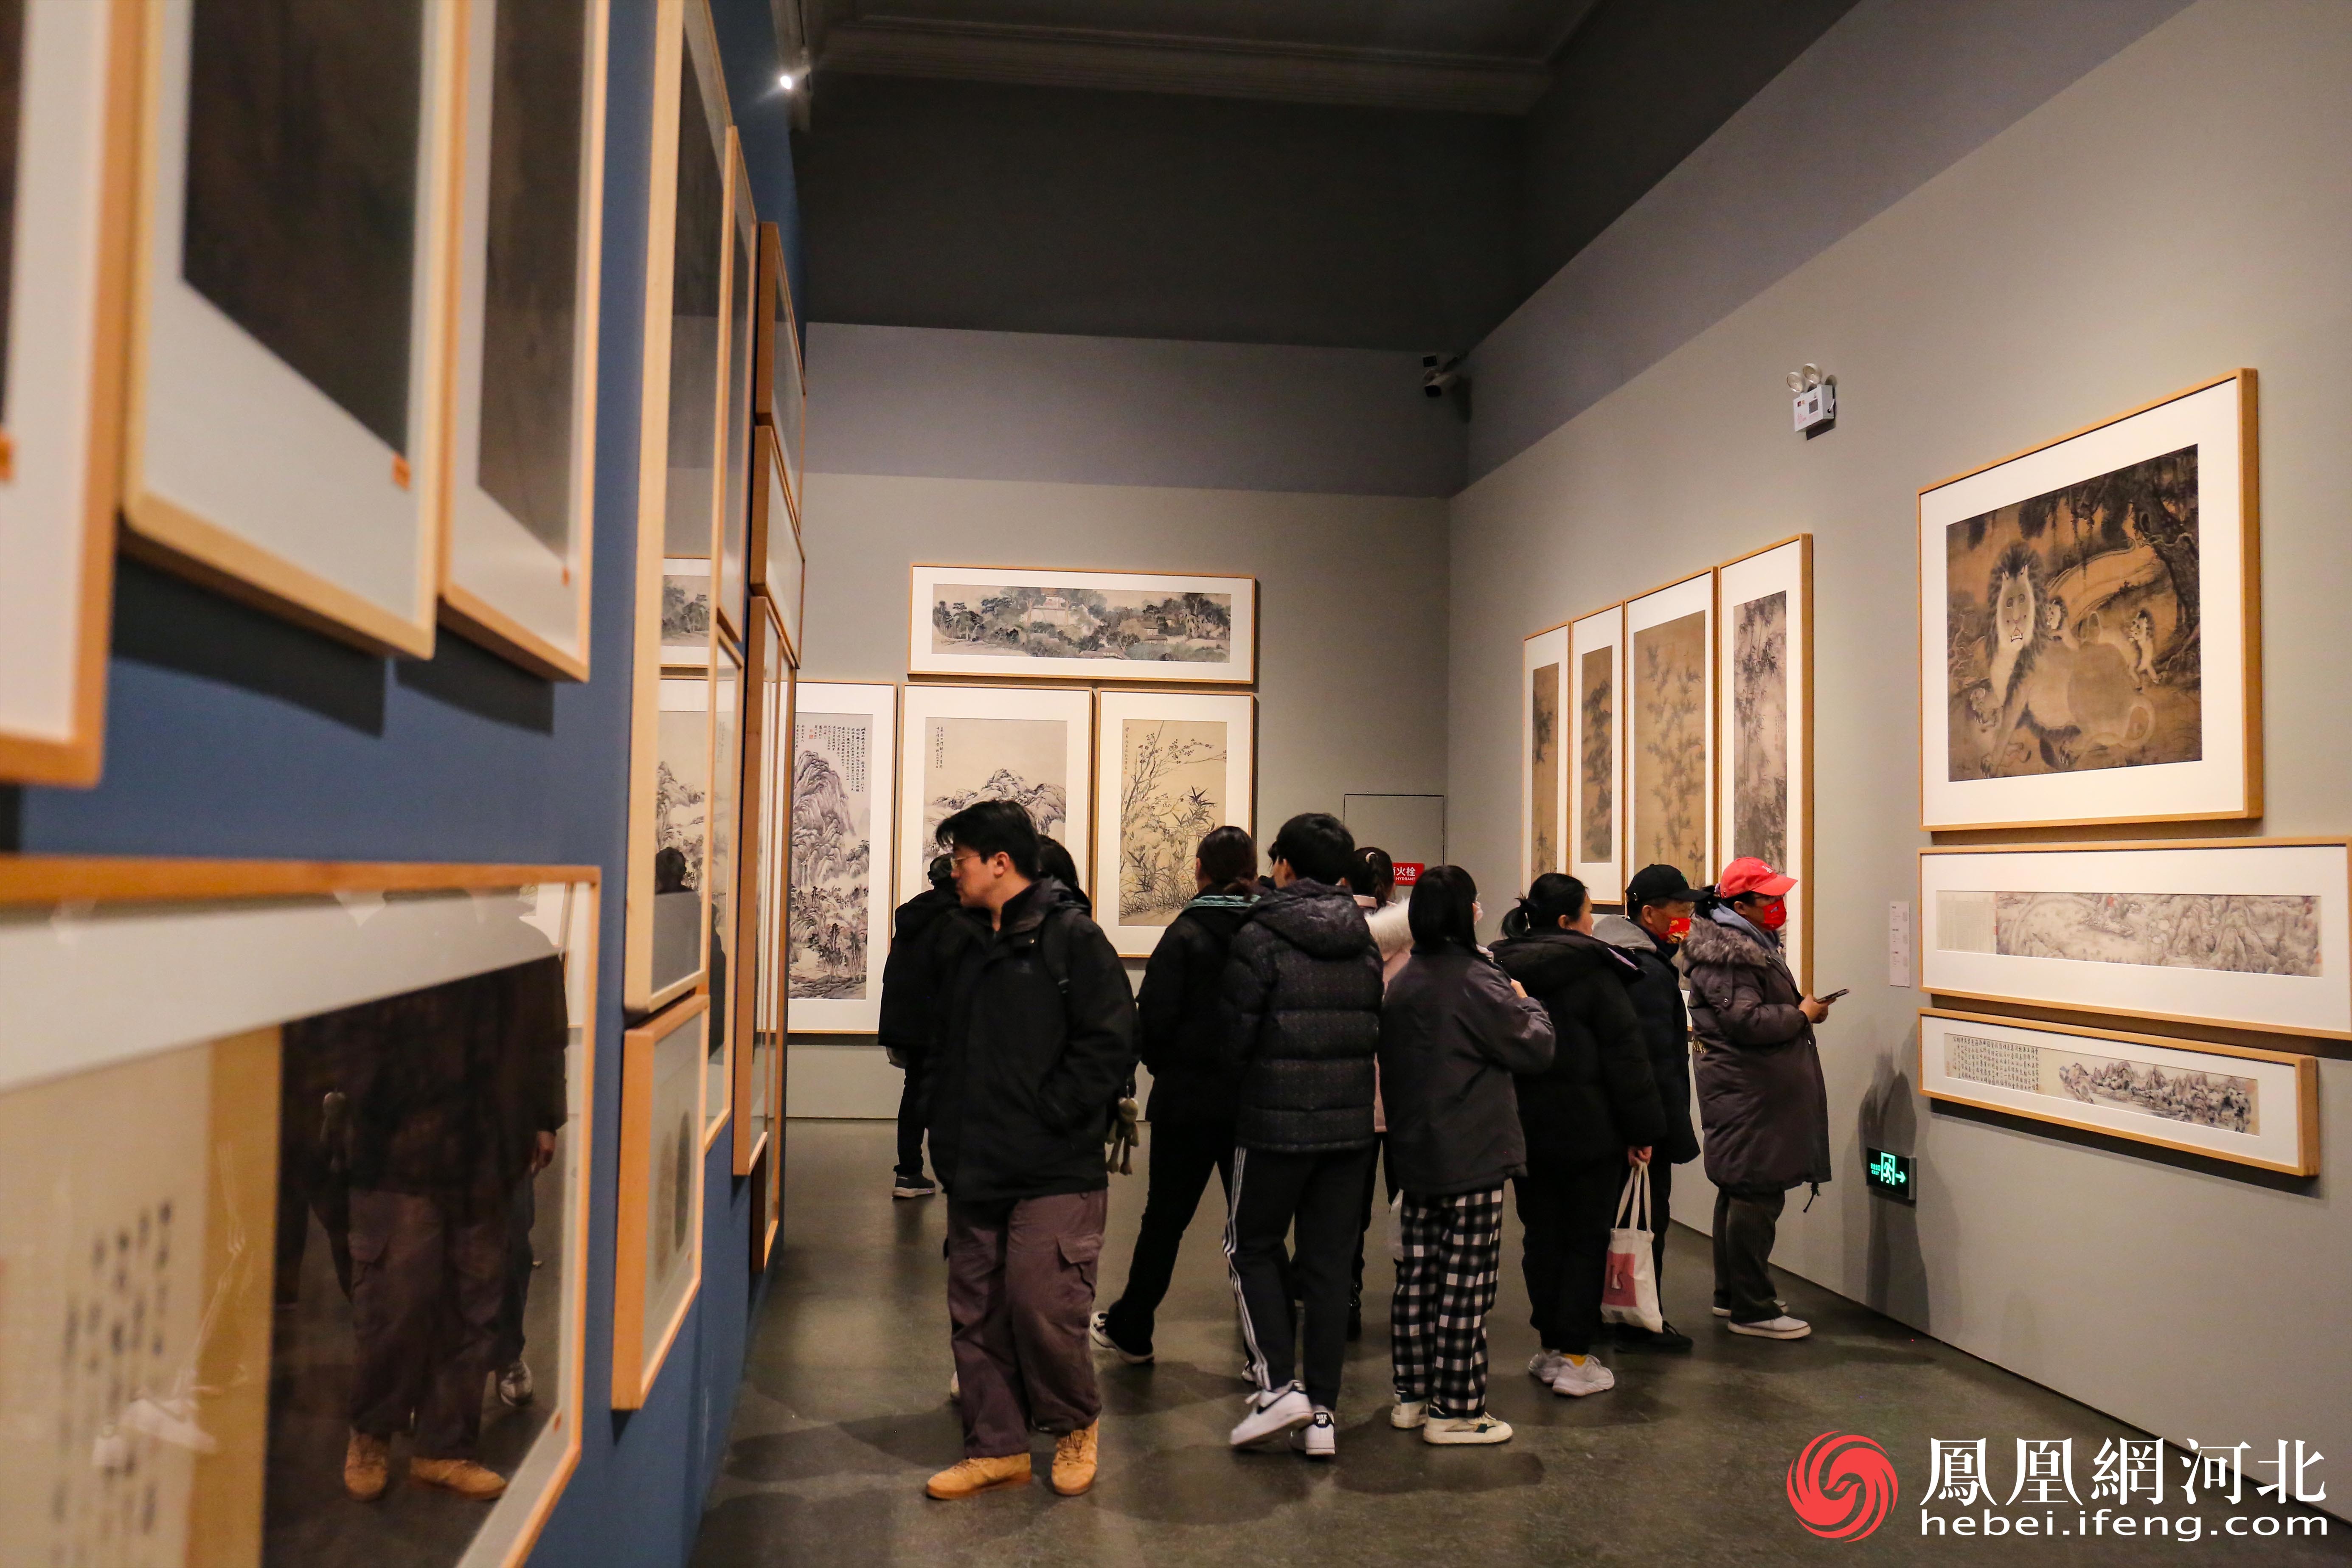 参观者停步在画作前认真欣赏，感受中华文化的独特魅力。